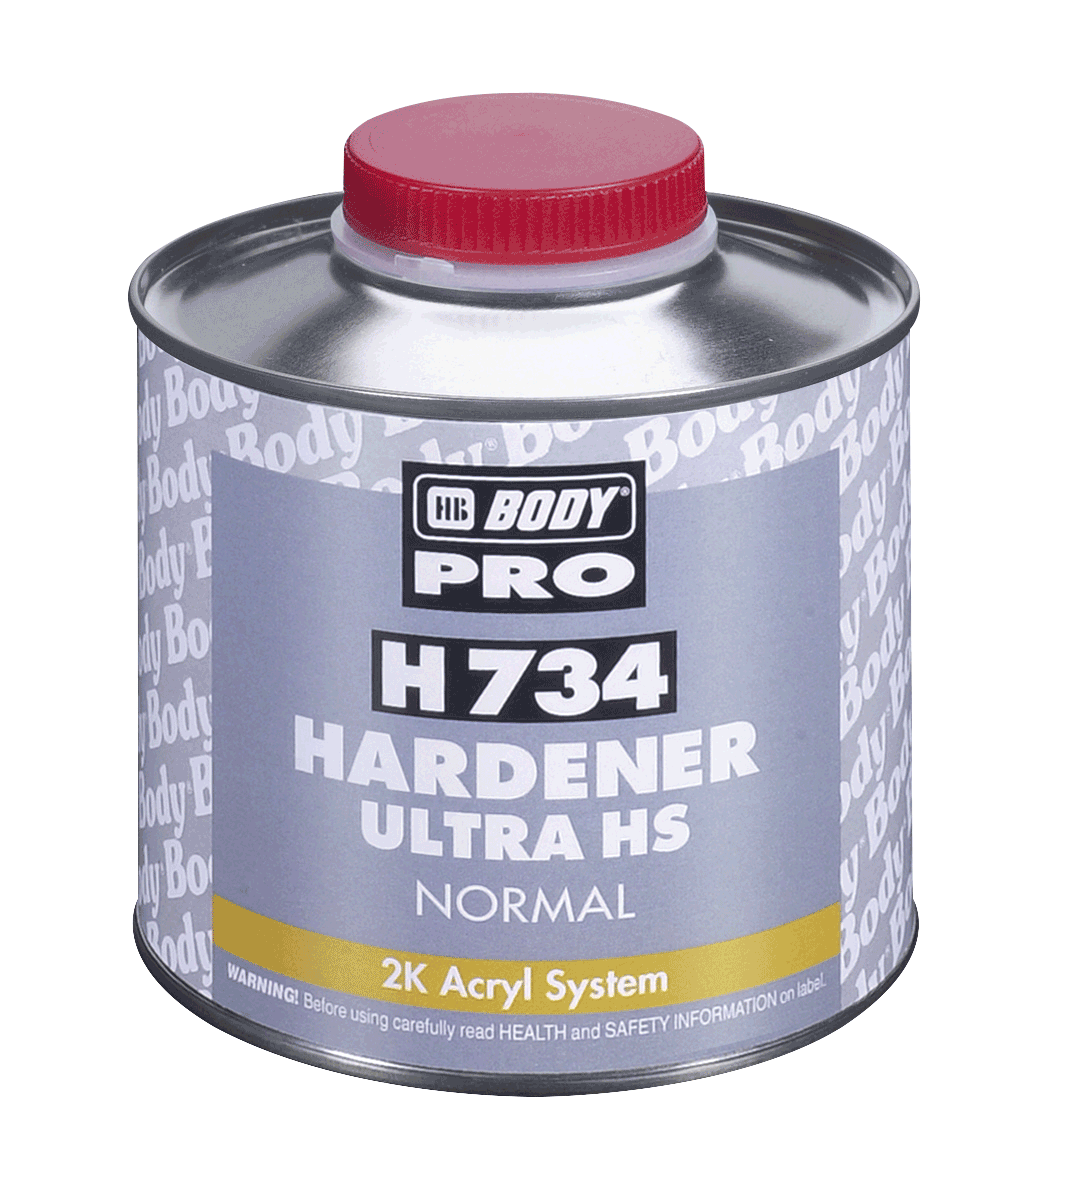 HB BODY Body 734 Hardener normal  2.5L